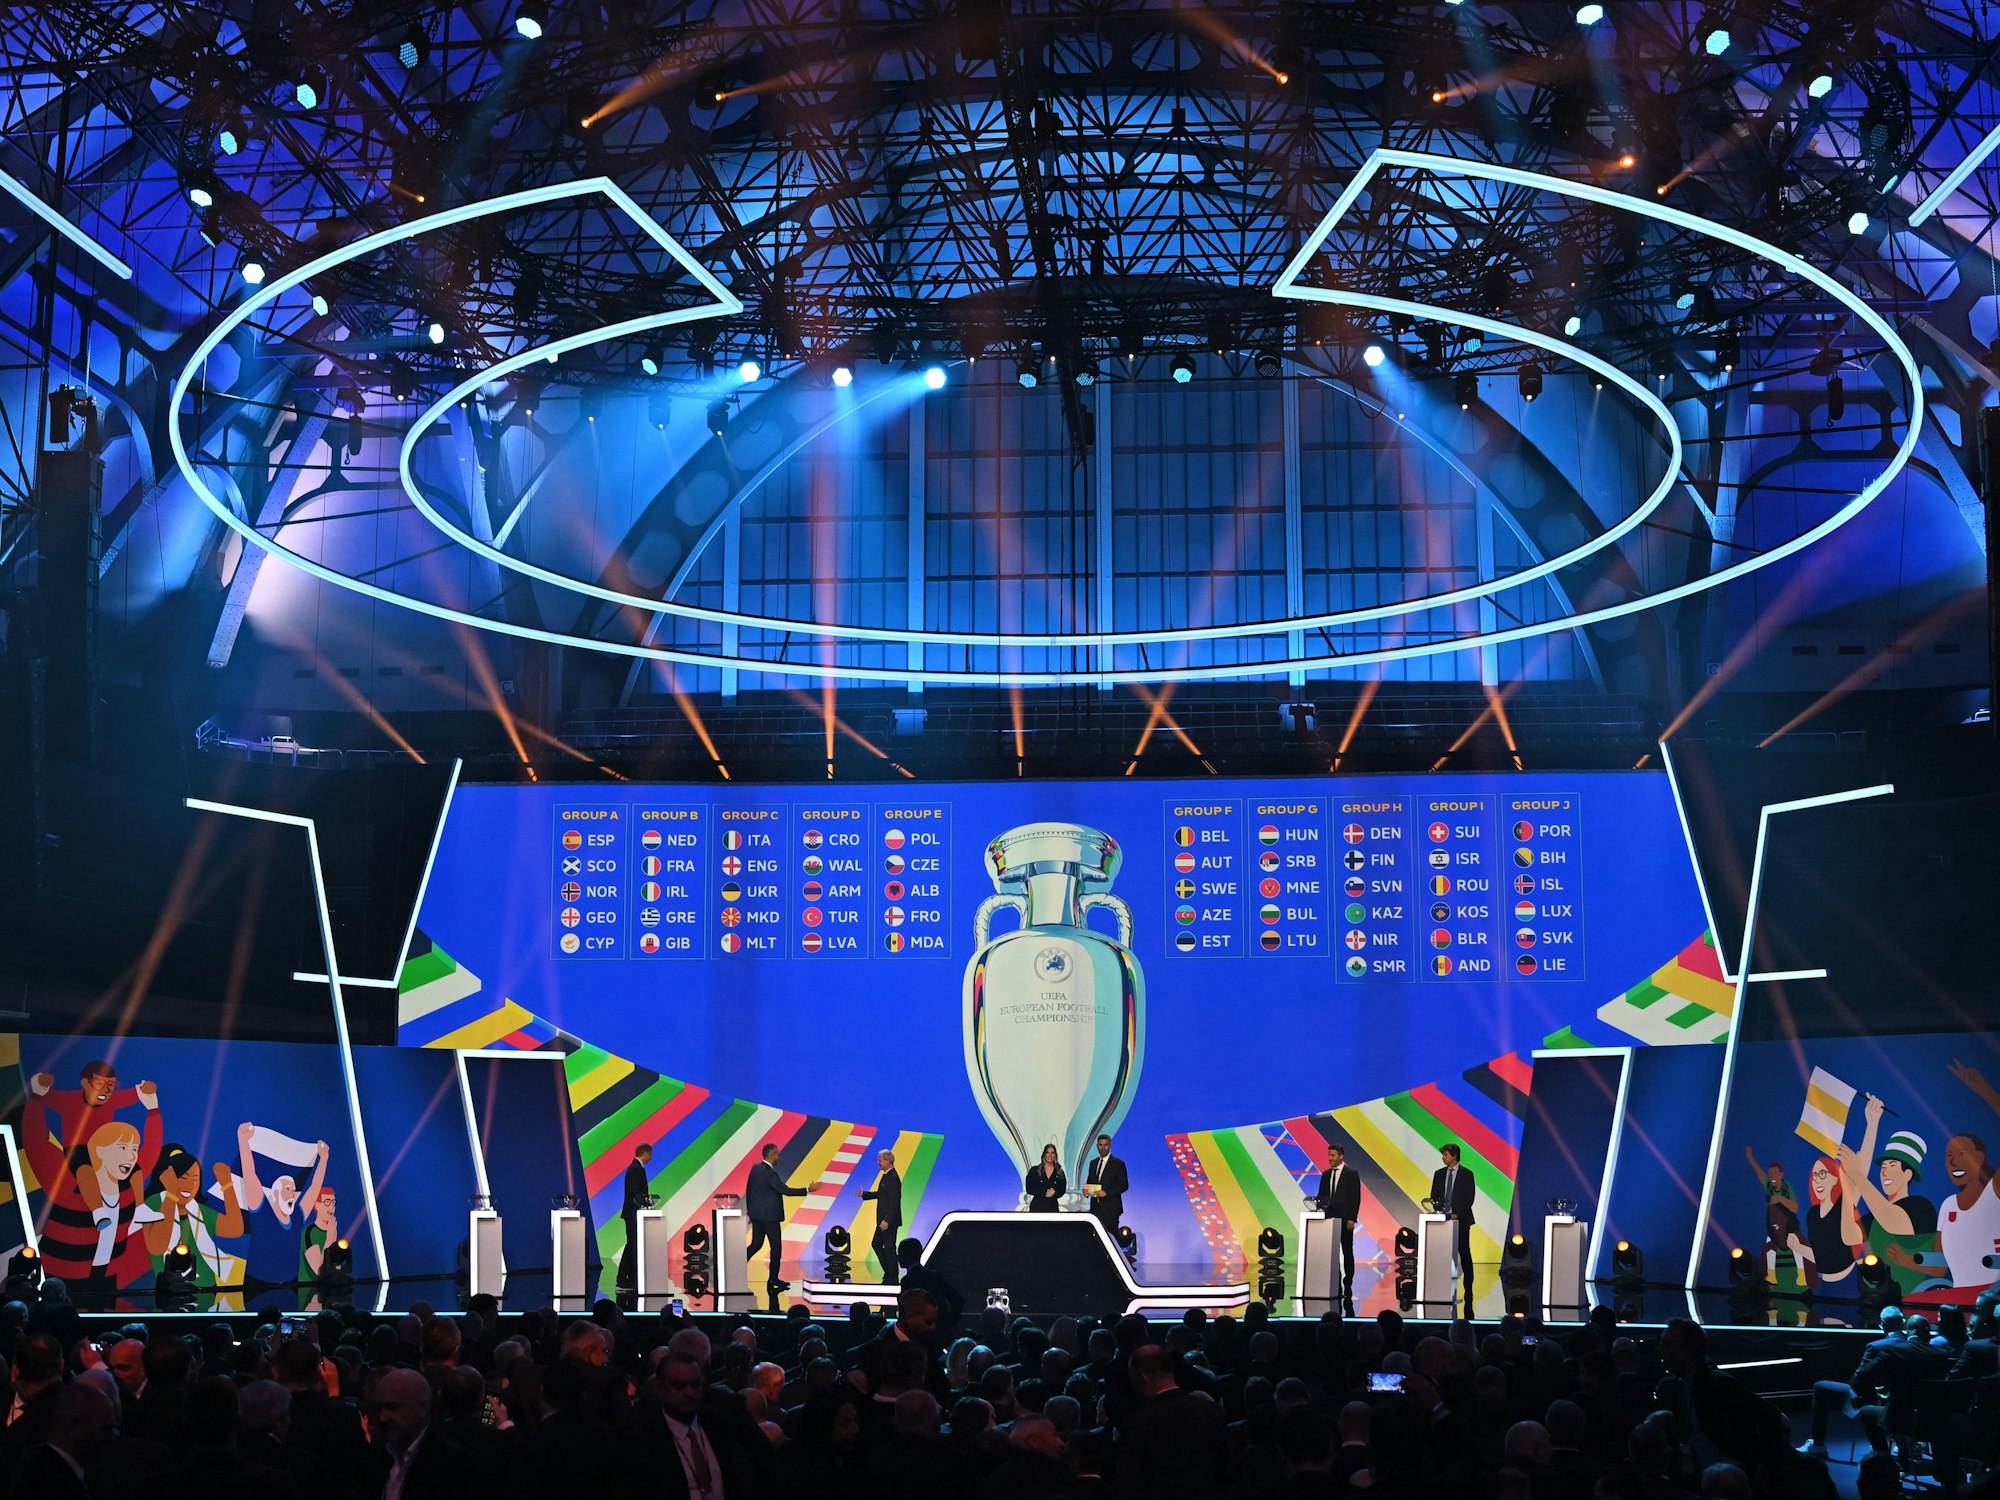 Die zehn Gruppen für die Qualifikation zur Fußball-Europameisterschaft 2024 werden nach der Auslosung auf einer großen Videoleinwand angezeigt.